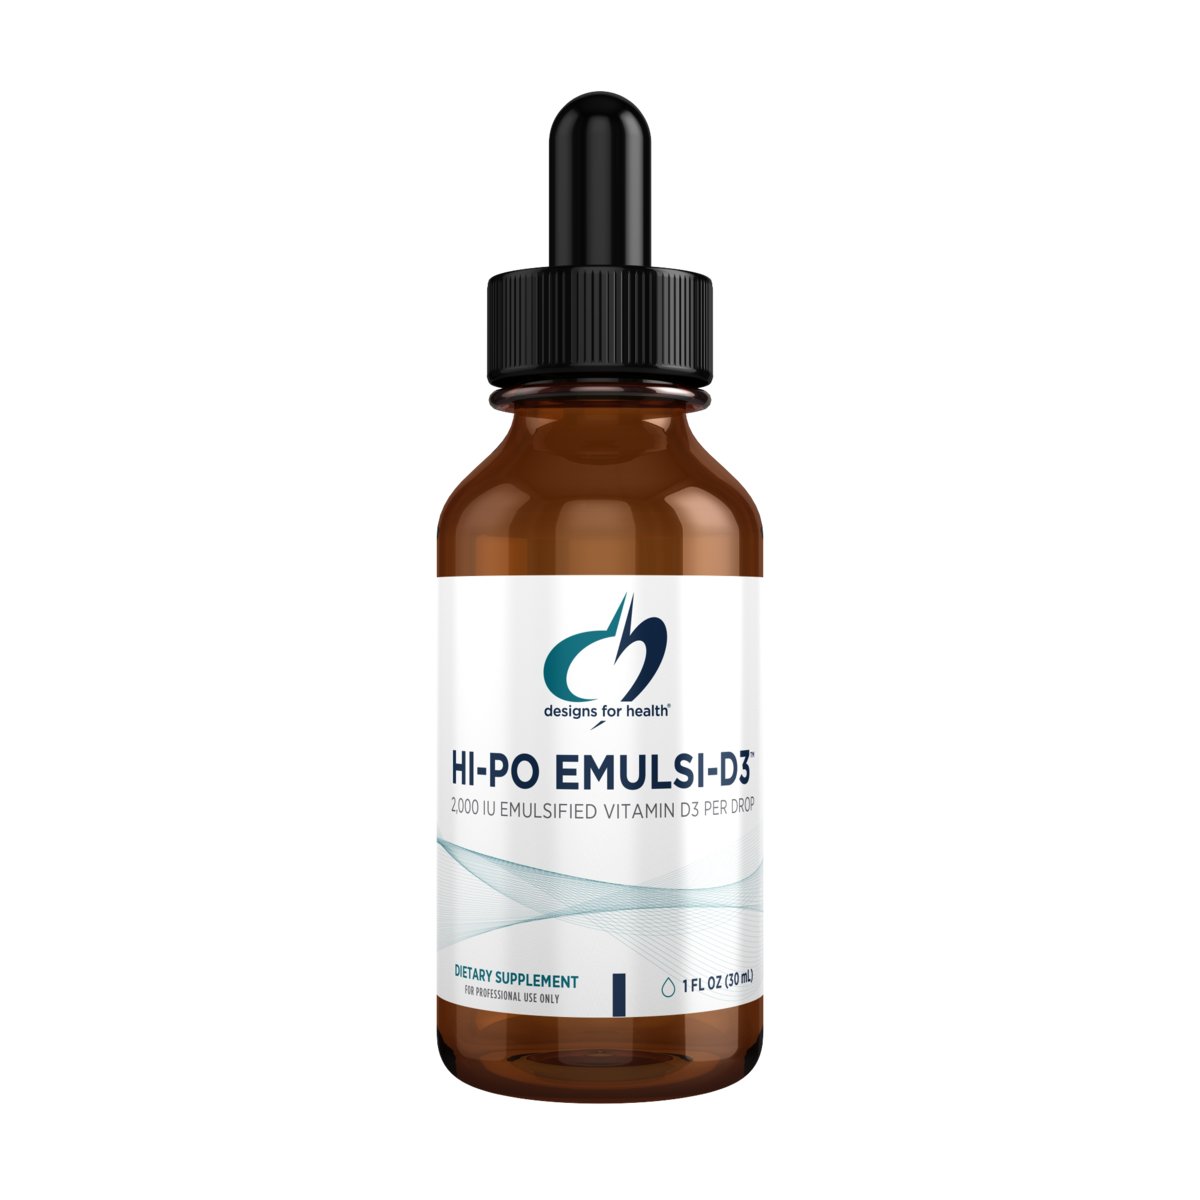 HI-PO EMULSI-D3 Vitamin D3